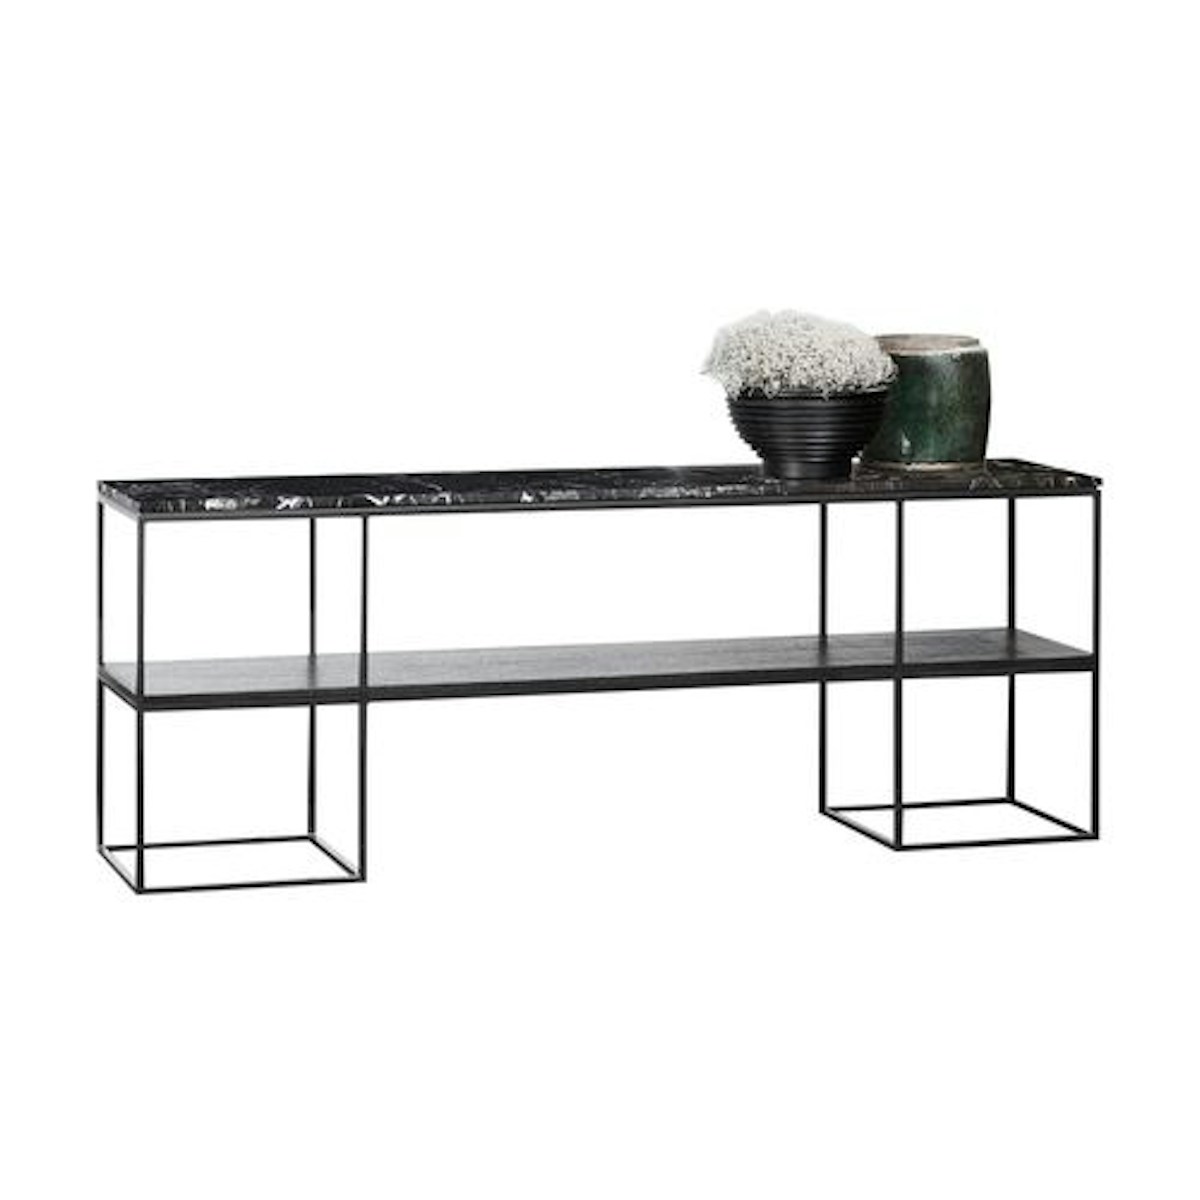 Black console table | Shop console tables online at LuxDeco.com